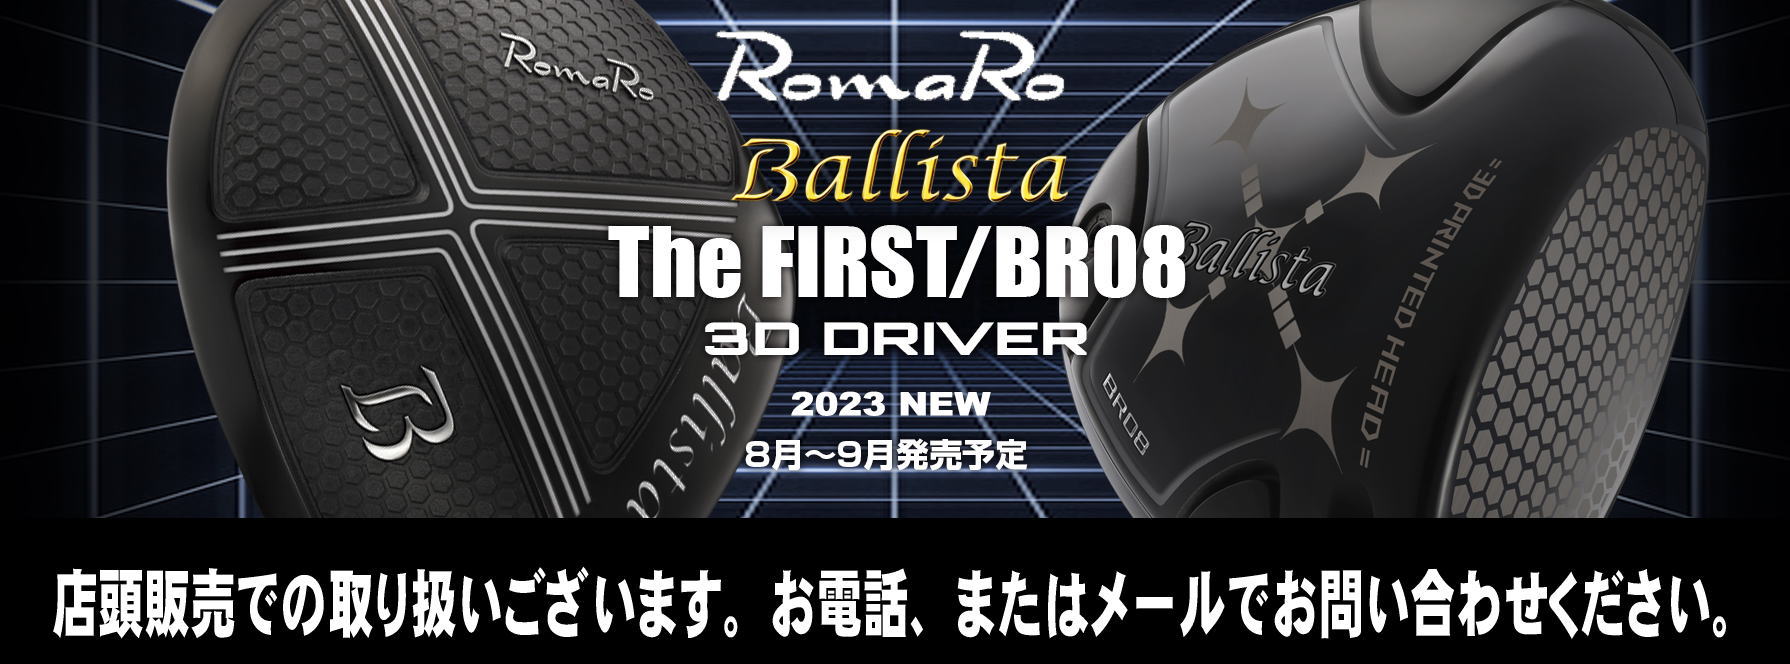 店舗販売限定】ロマロ バリスタ Ballista The FIRST 3D DRIVER